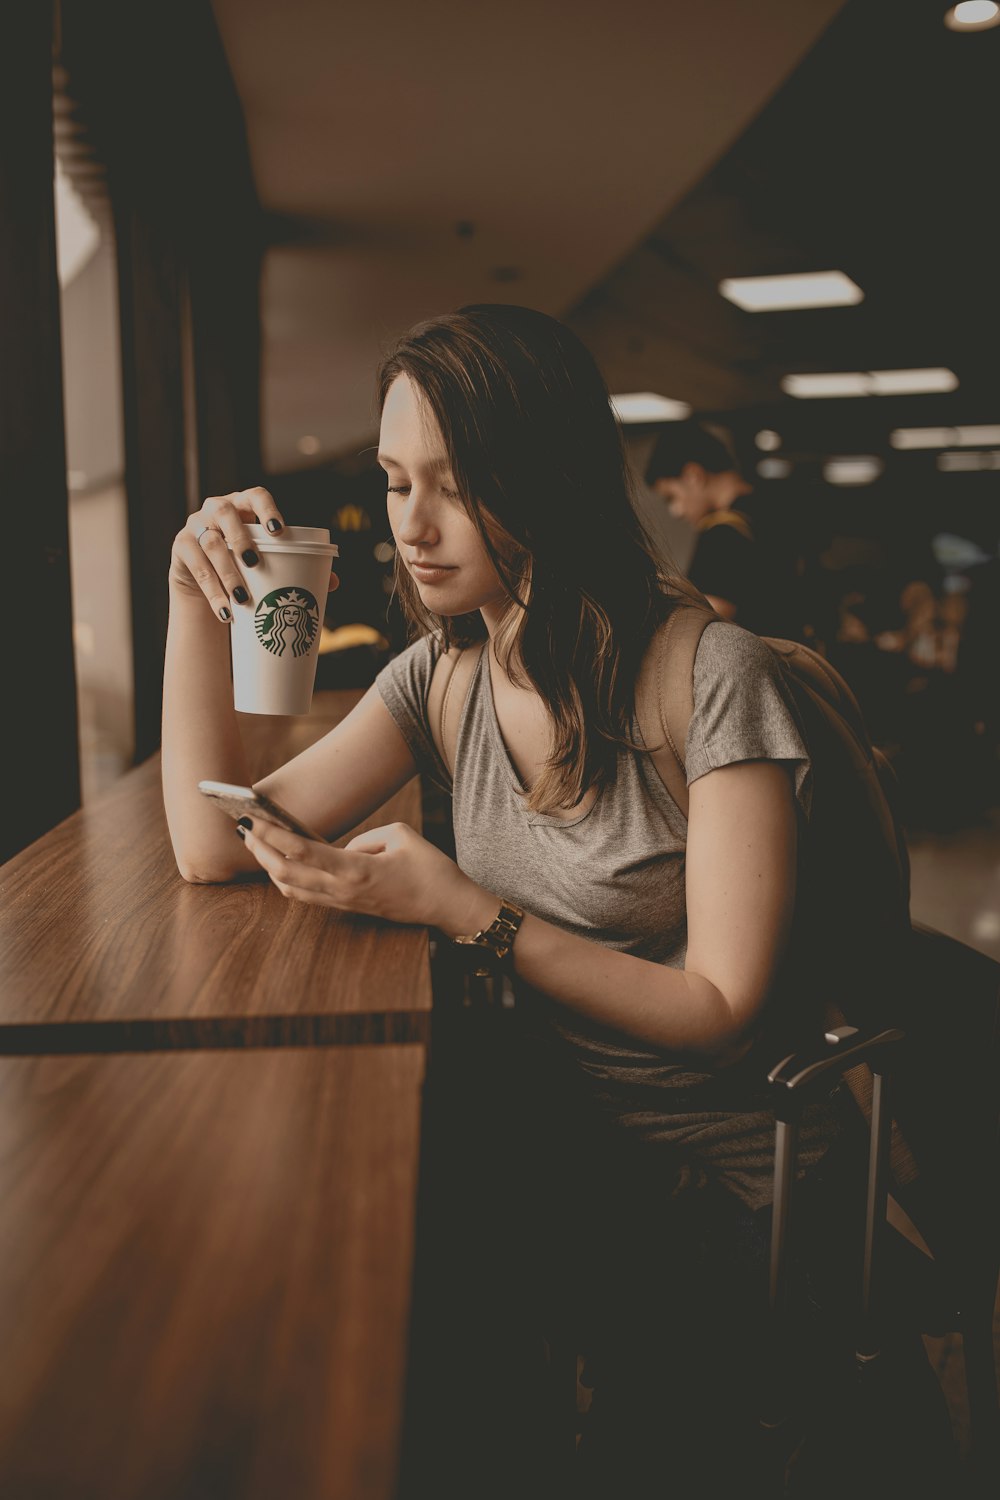 스타벅스 일회용 컵과 스마트폰을 들고 있는 여자